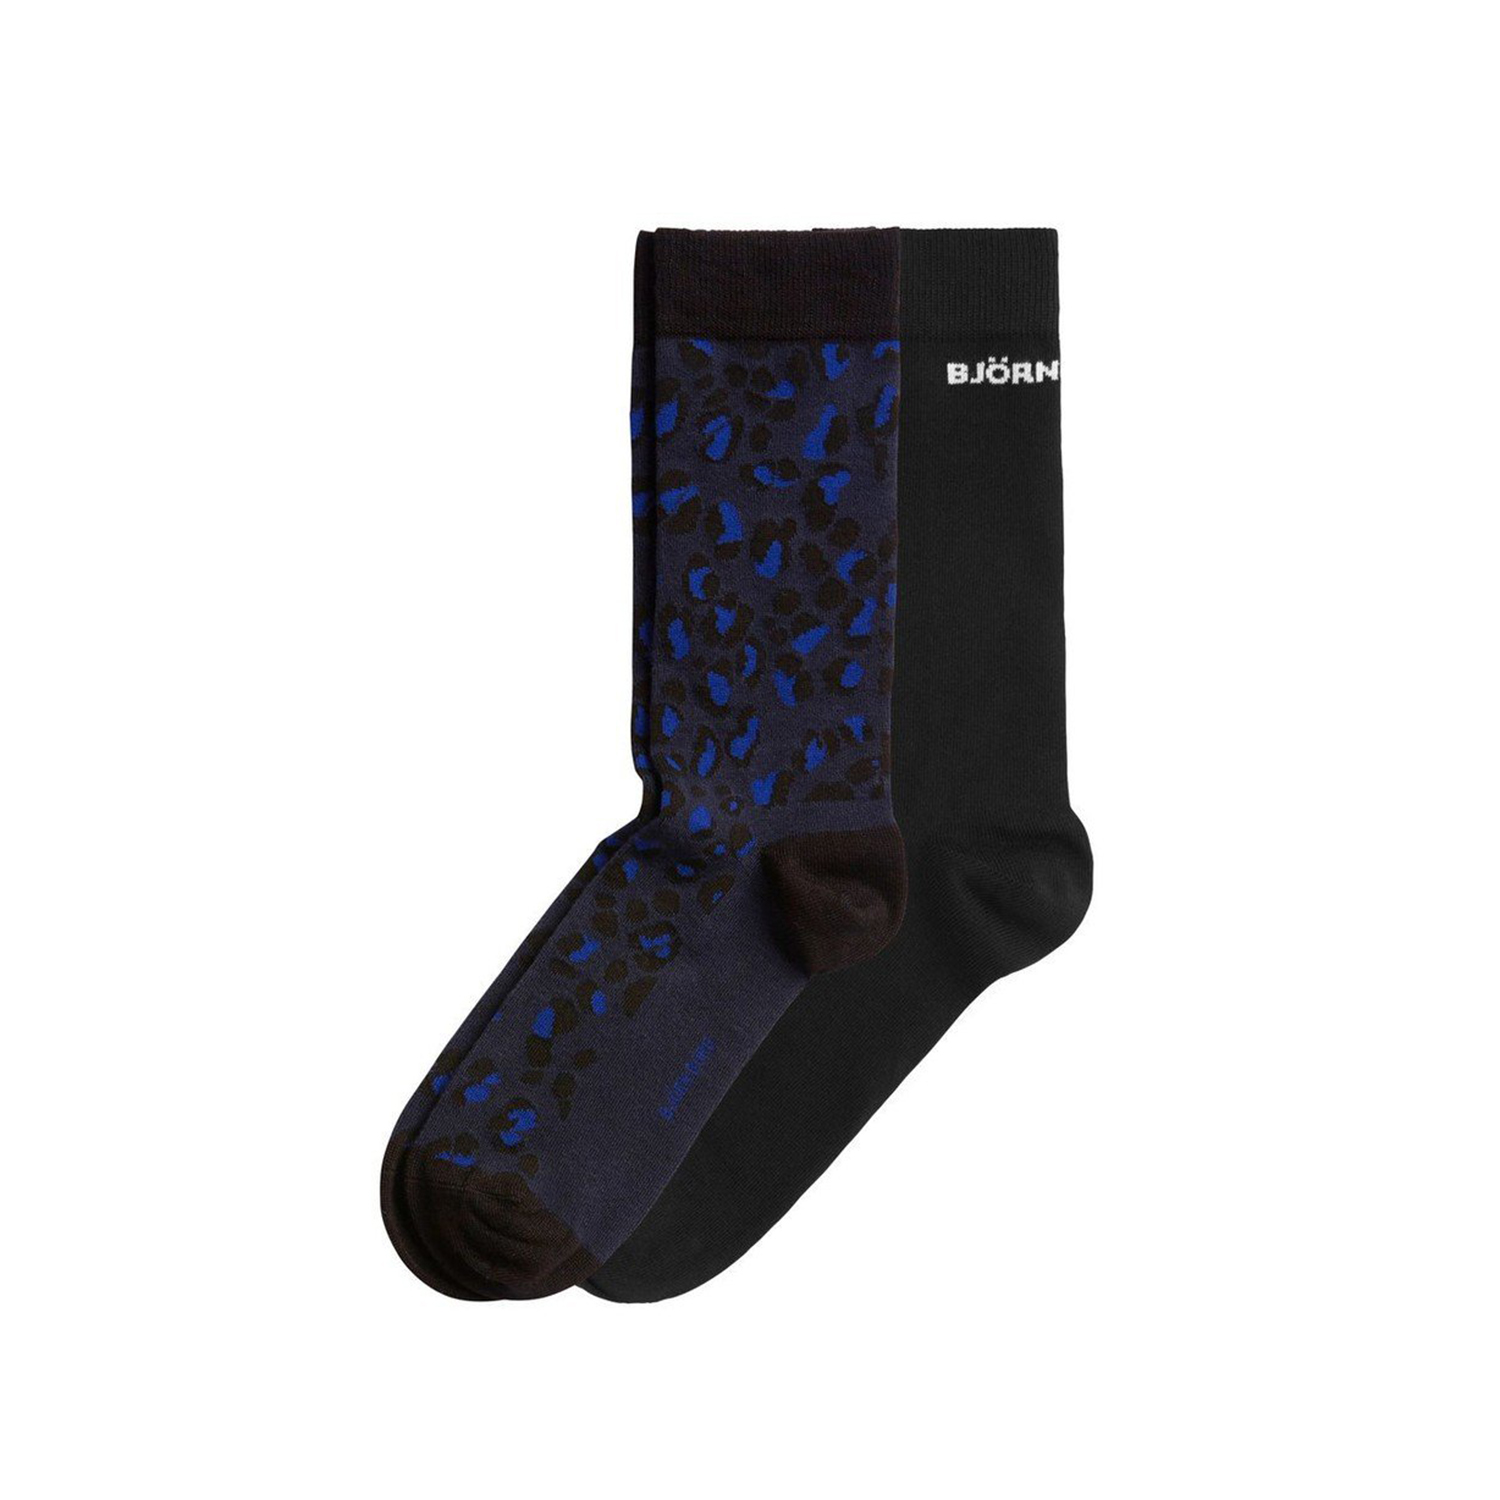 Ανδρικά/Αξεσουάρ/Κάλτσες BJORN BORG - Unisex κάλτσες σετ των 2 BJORN BORG μπλε